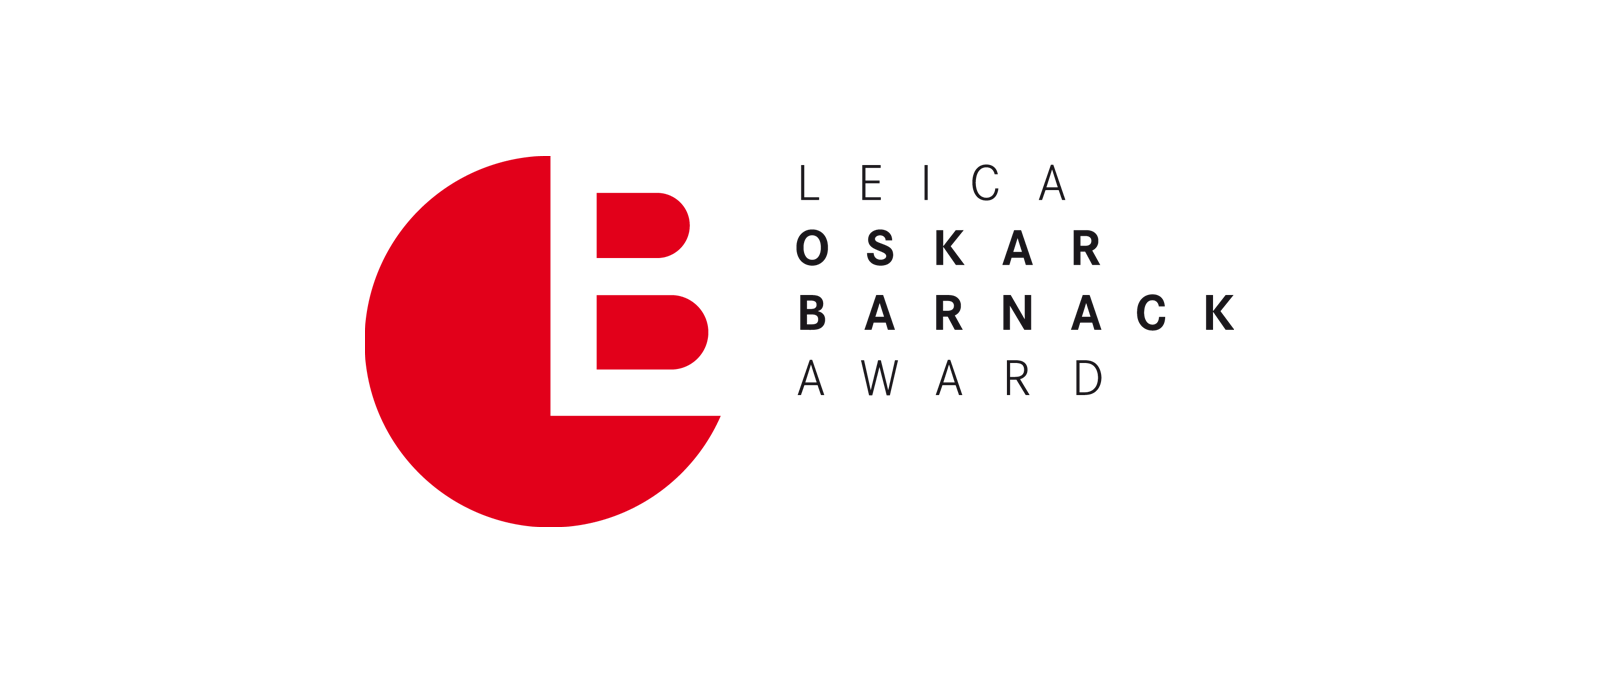 Thumbnail of Oskar barnack Newcomer Leica Award 2021